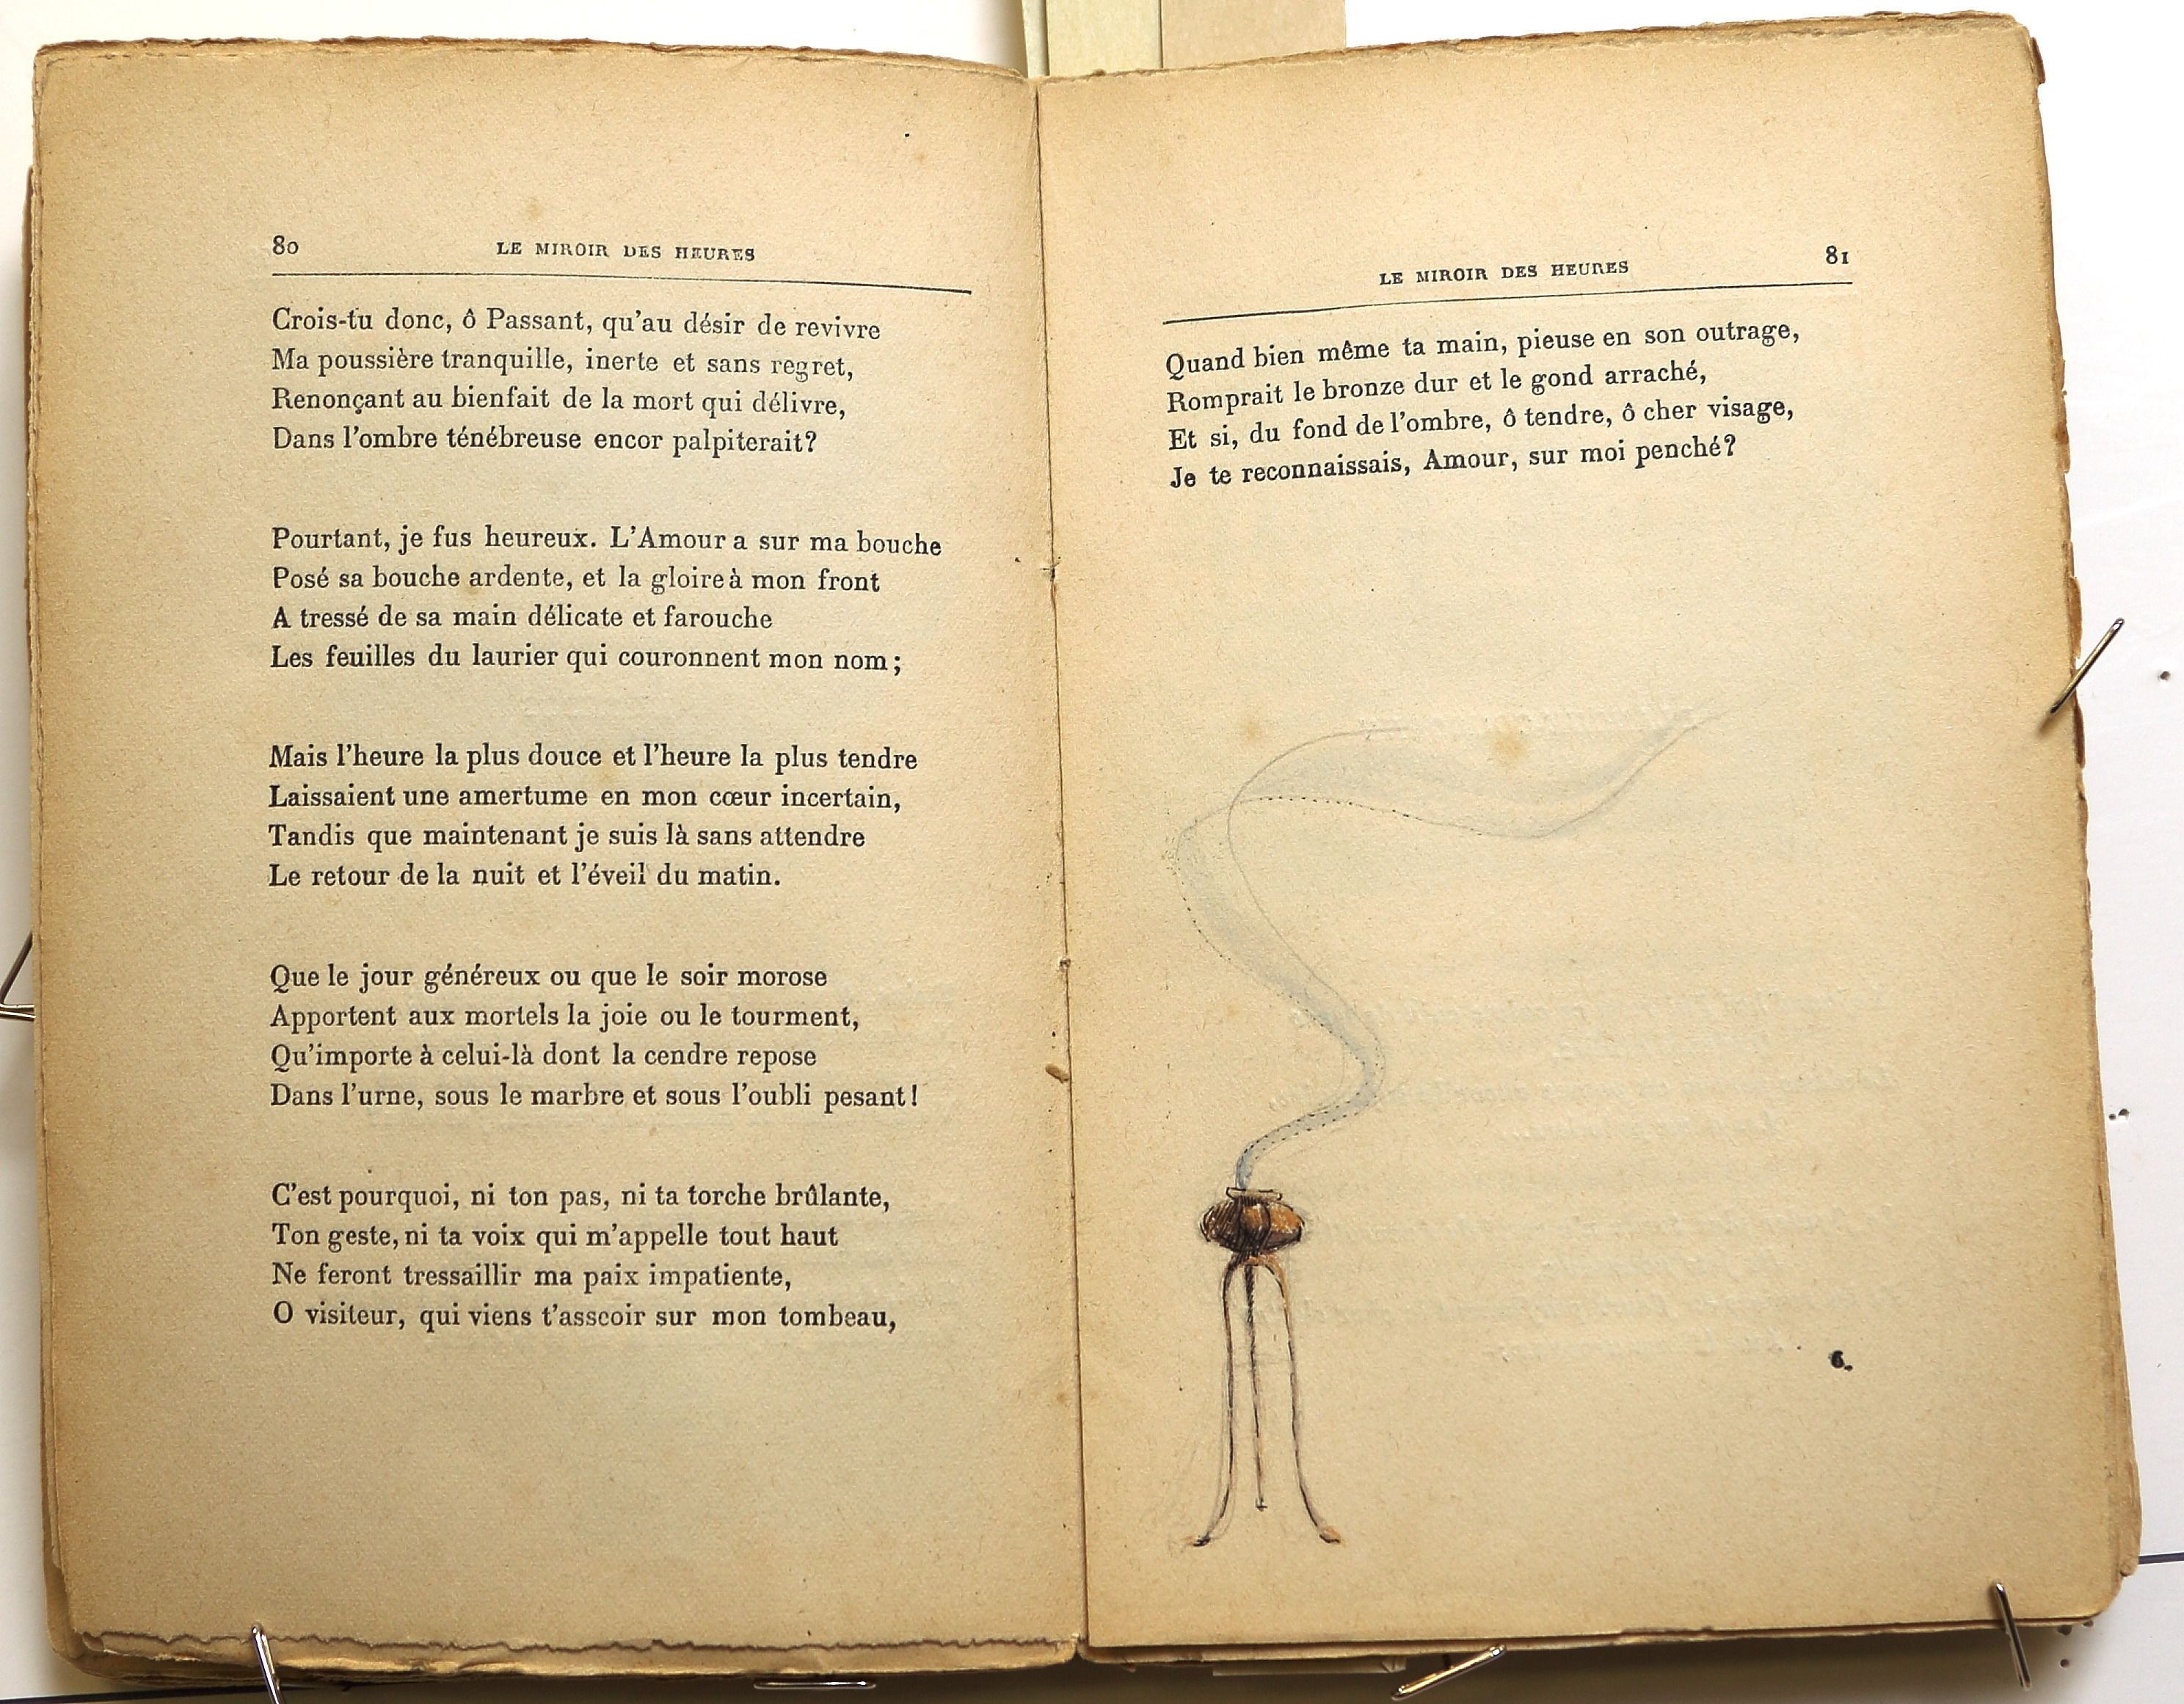 Pages 80–81.  Le Miroir des Heures, illustrations.  Jean Charlot.